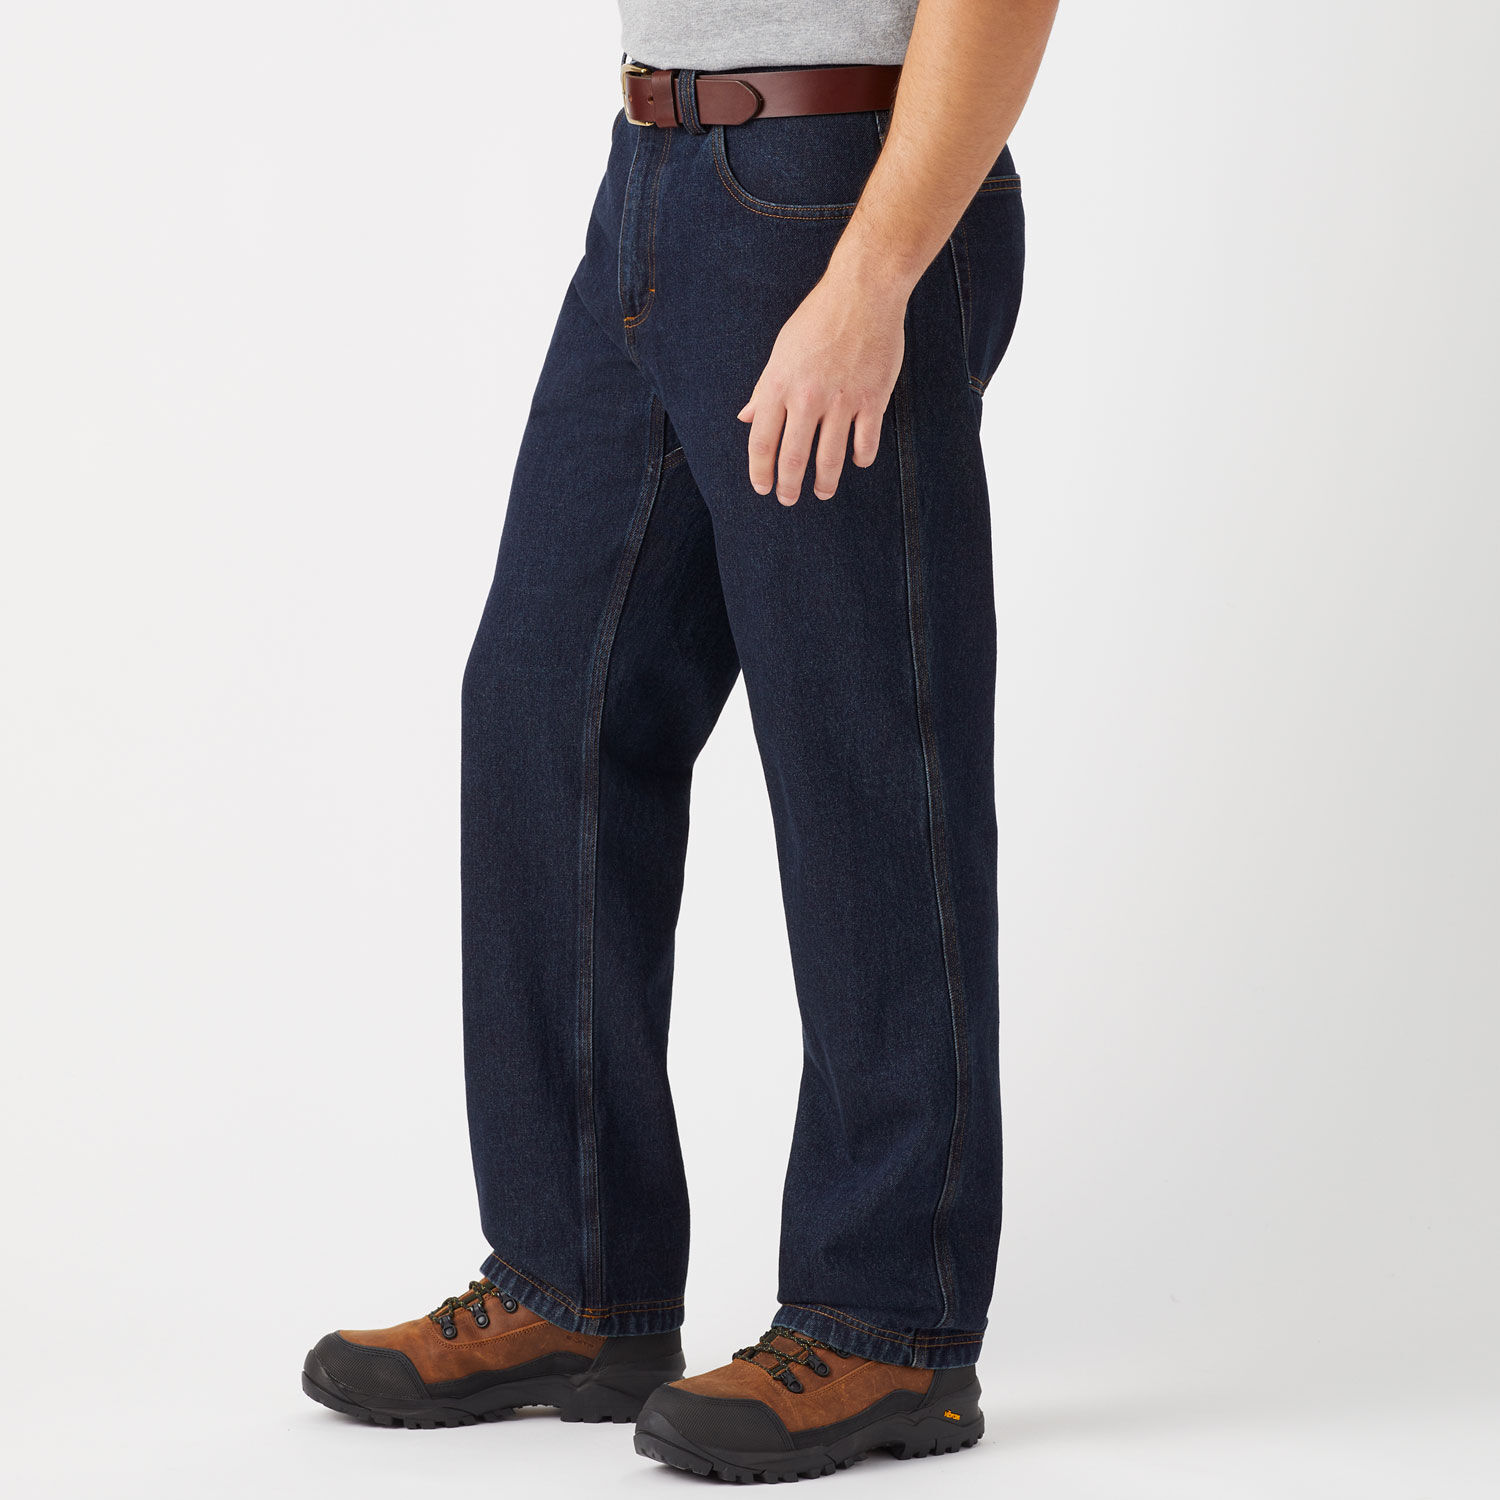 Buy Blue Jeans for Men by Tim Paris Online | Ajio.com